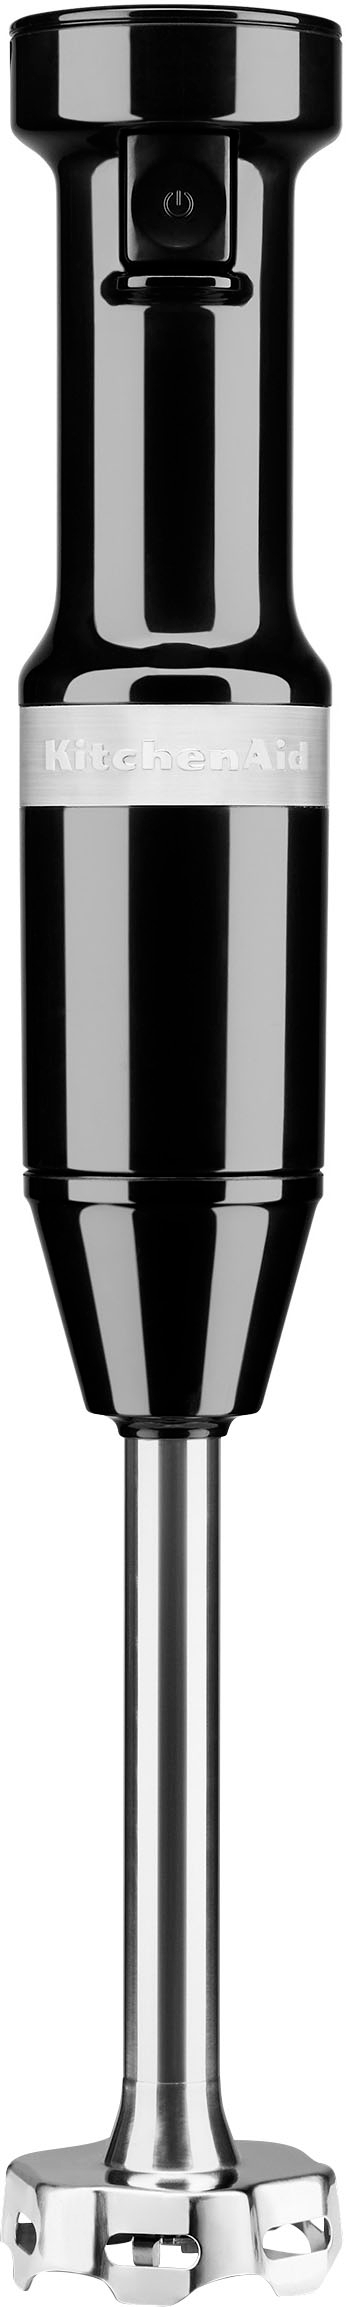 KitchenAid KHB2351OB 3-Speed Hand Blender - Onyx Black